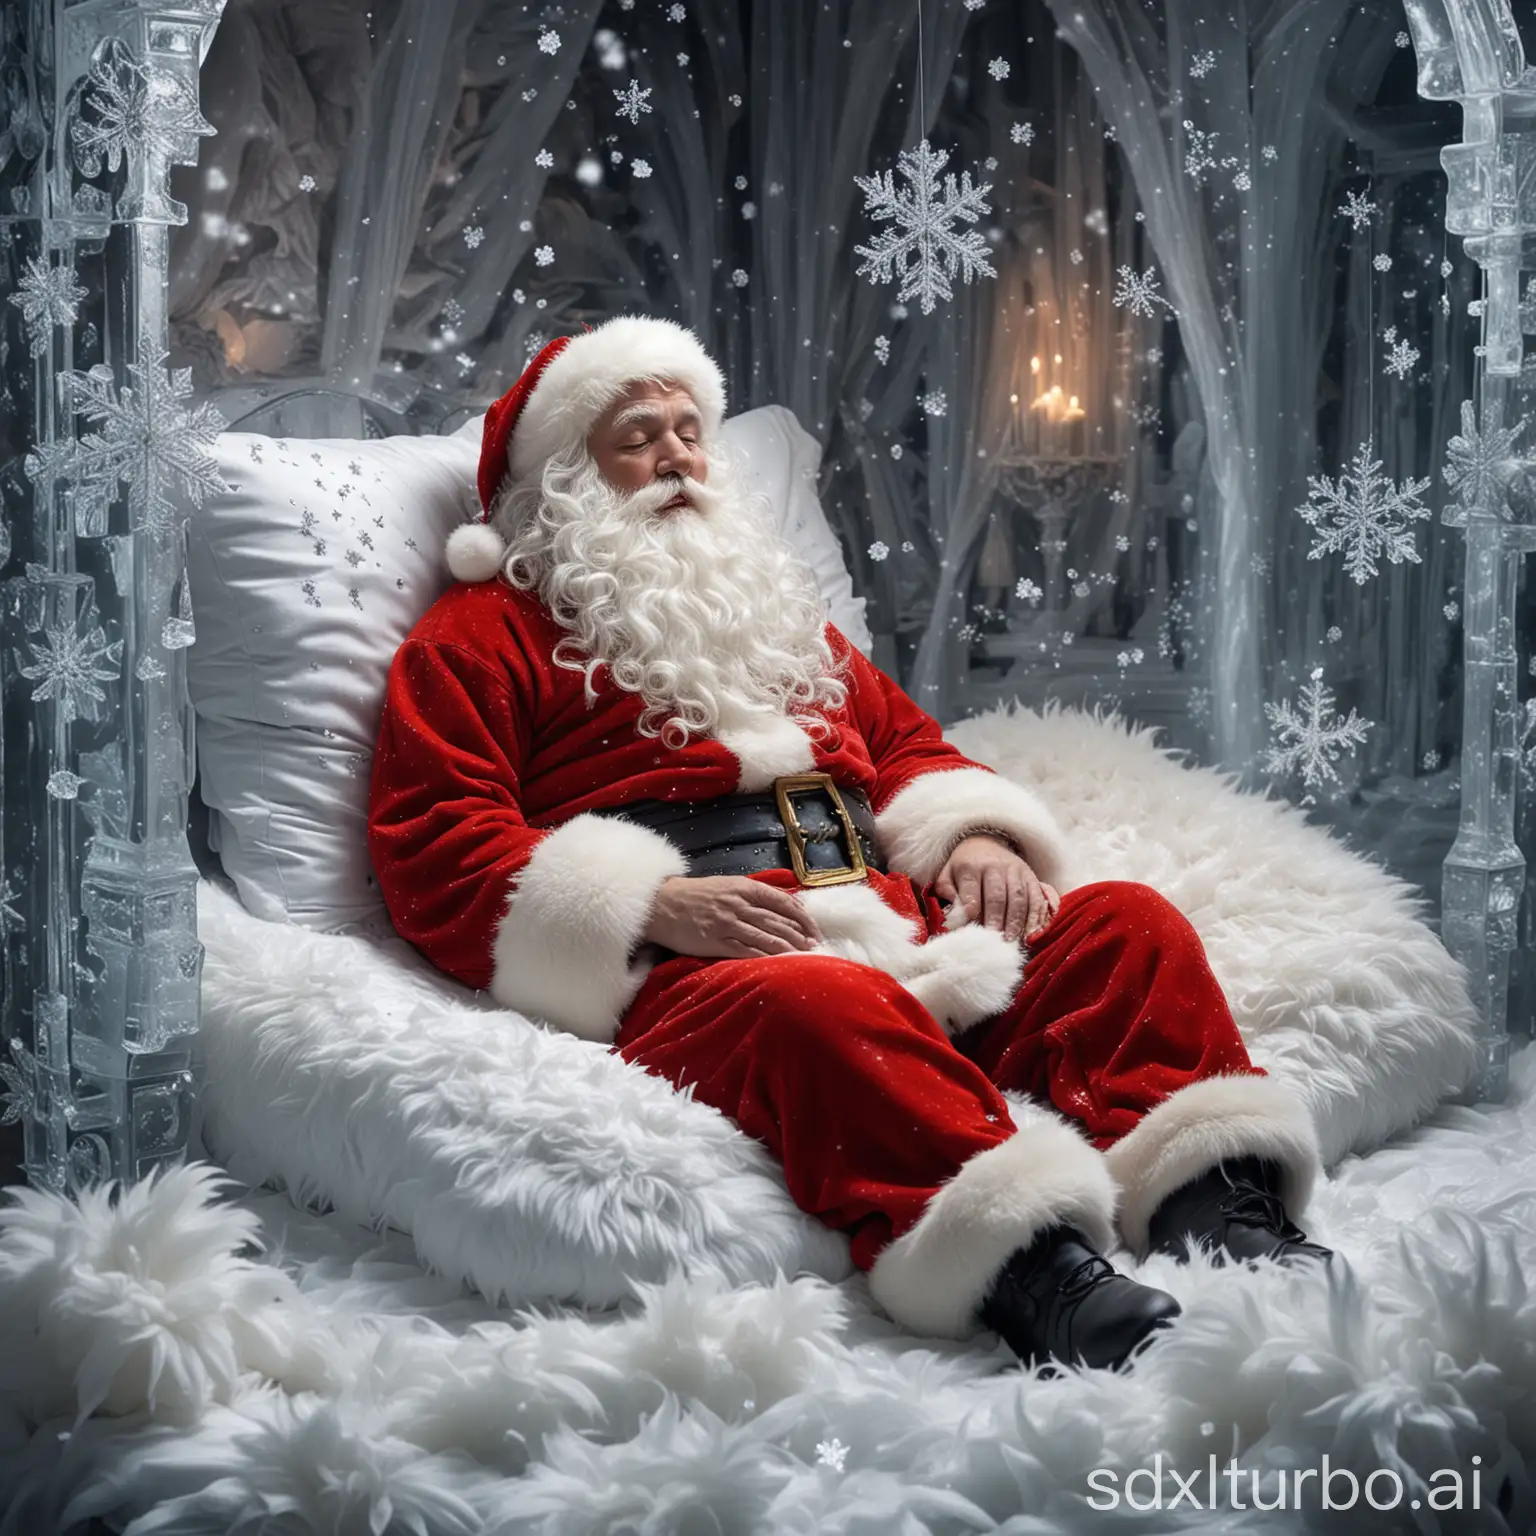 Santa Claus schläft tief in seinem prachtvollen, funkelnden Palast aus Eis. Glitzernde Schneeflocken schweben um ihn herum, während er in ein dickes, flauschiges Fell eingewickelt ist.